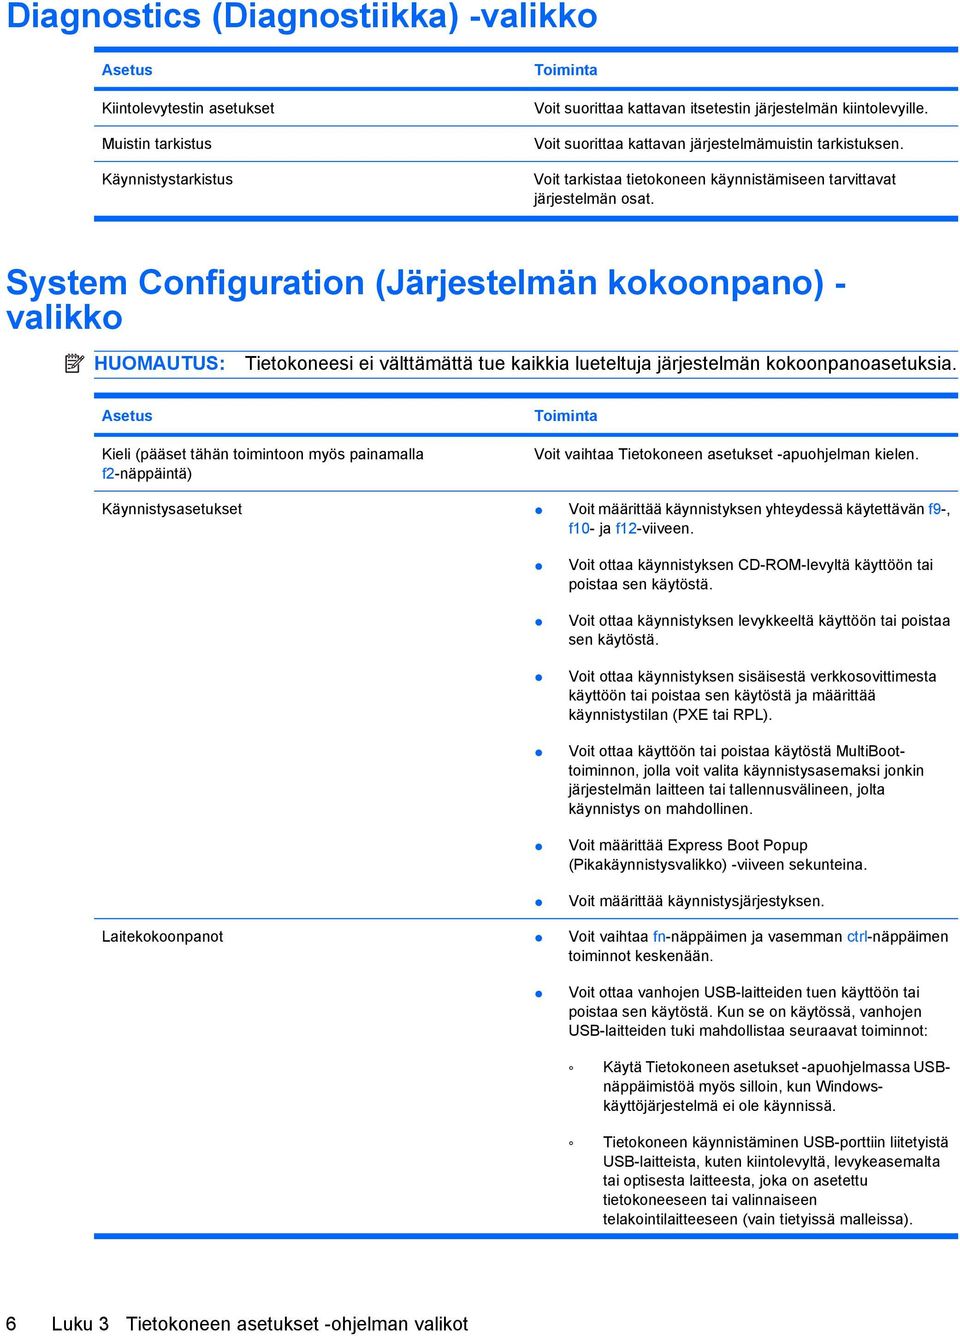 System Configuration (Järjestelmän kokoonpano) - valikko HUOMAUTUS: Tietokoneesi ei välttämättä tue kaikkia lueteltuja järjestelmän kokoonpanoasetuksia.